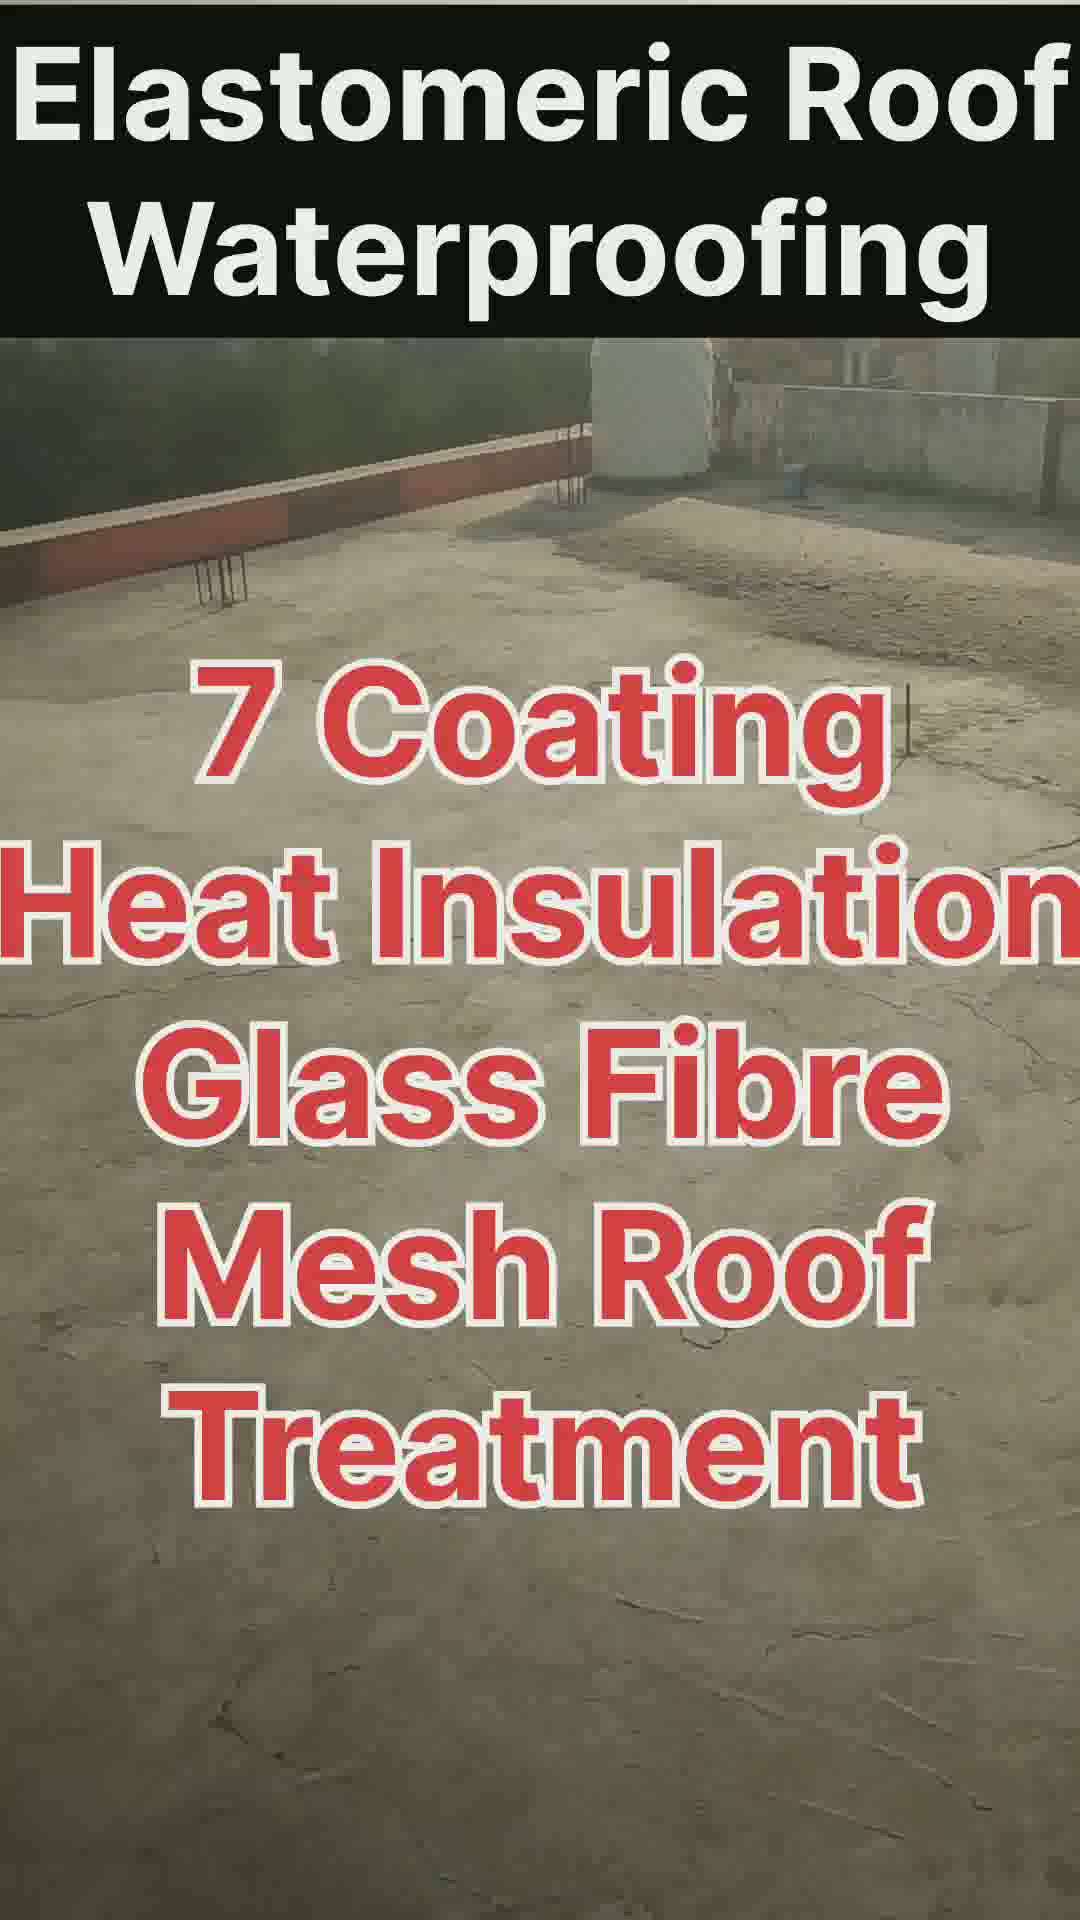 Elastomeric roof waterproofing
treatment
 #WaterProofing